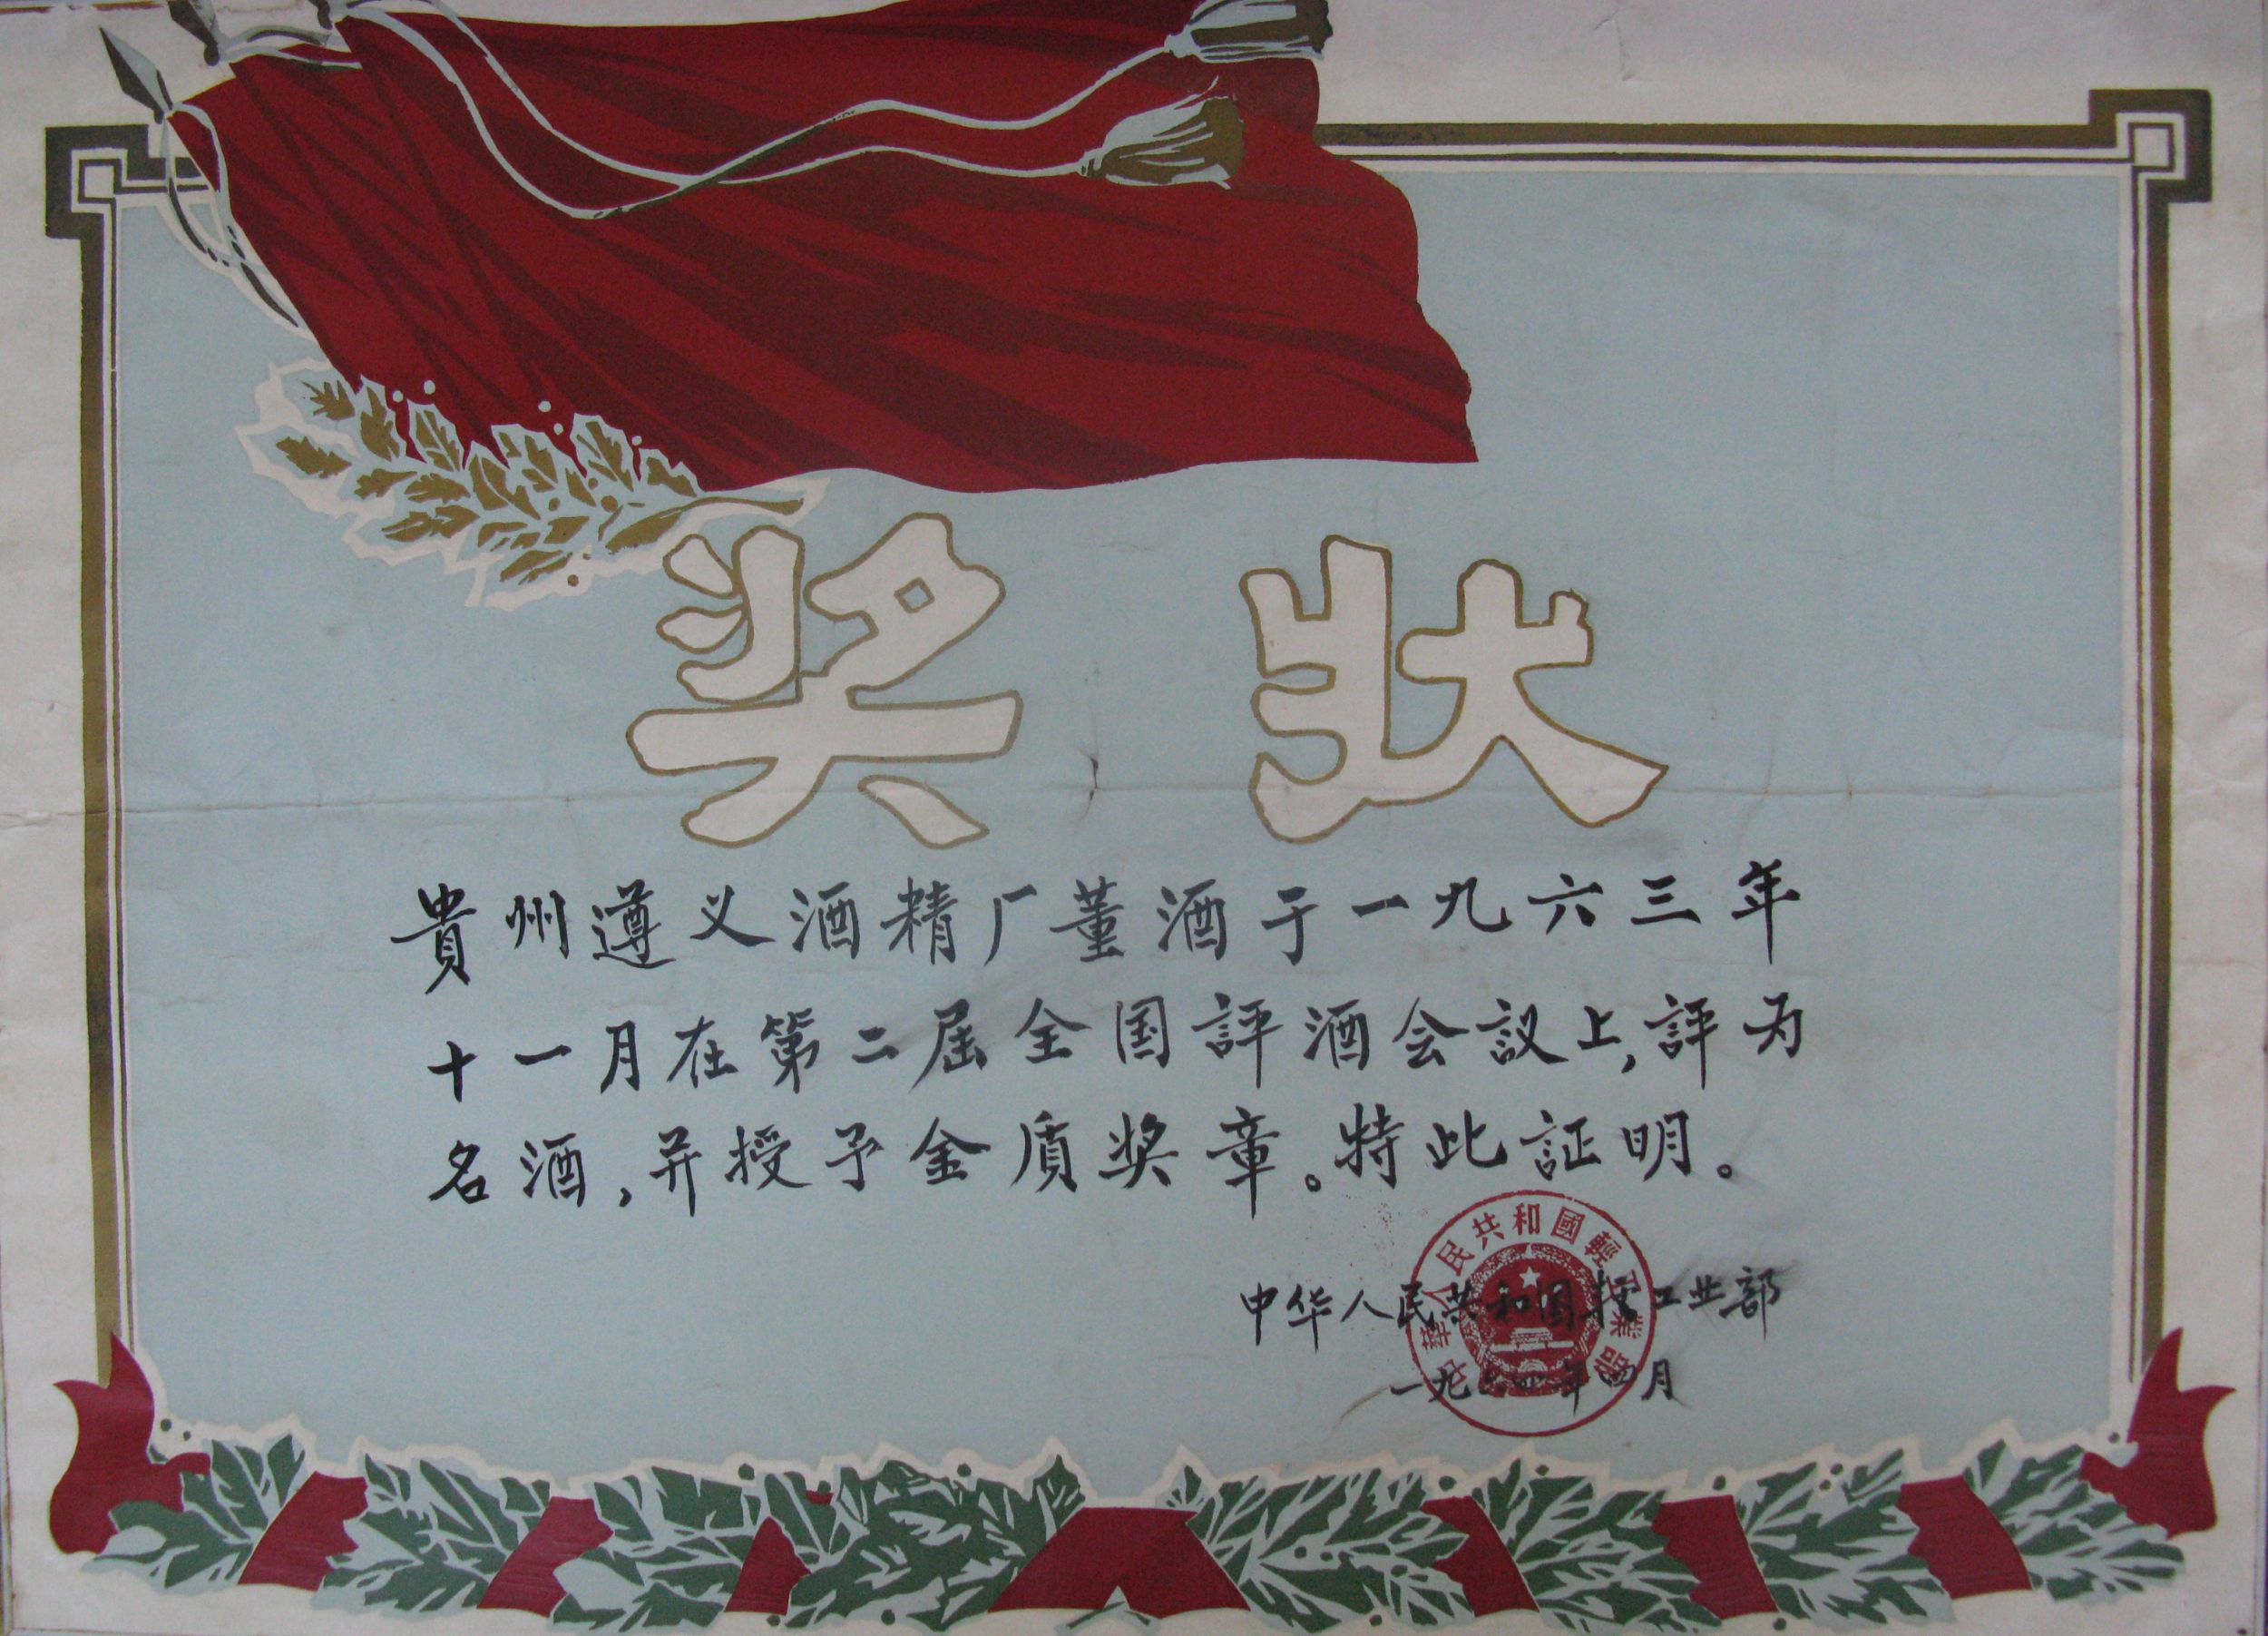 1963年董酒获得第2届“中国名酒”称号